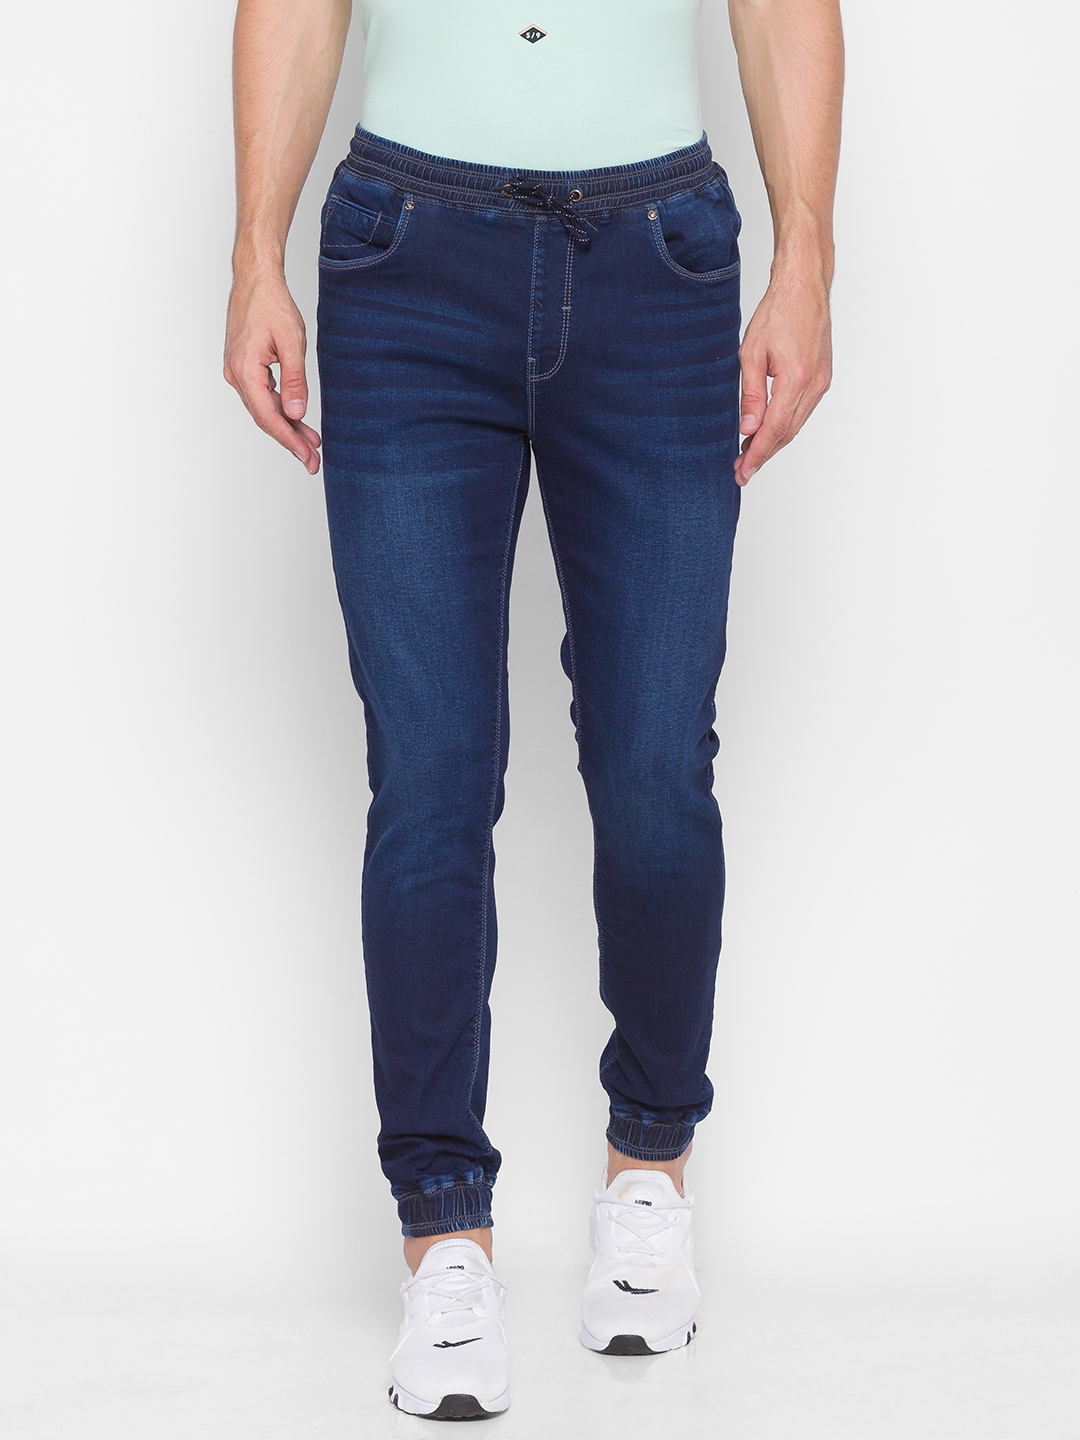 Spykar Blue Cotton Slim Fit Ankle length Joggers Jeans For Men